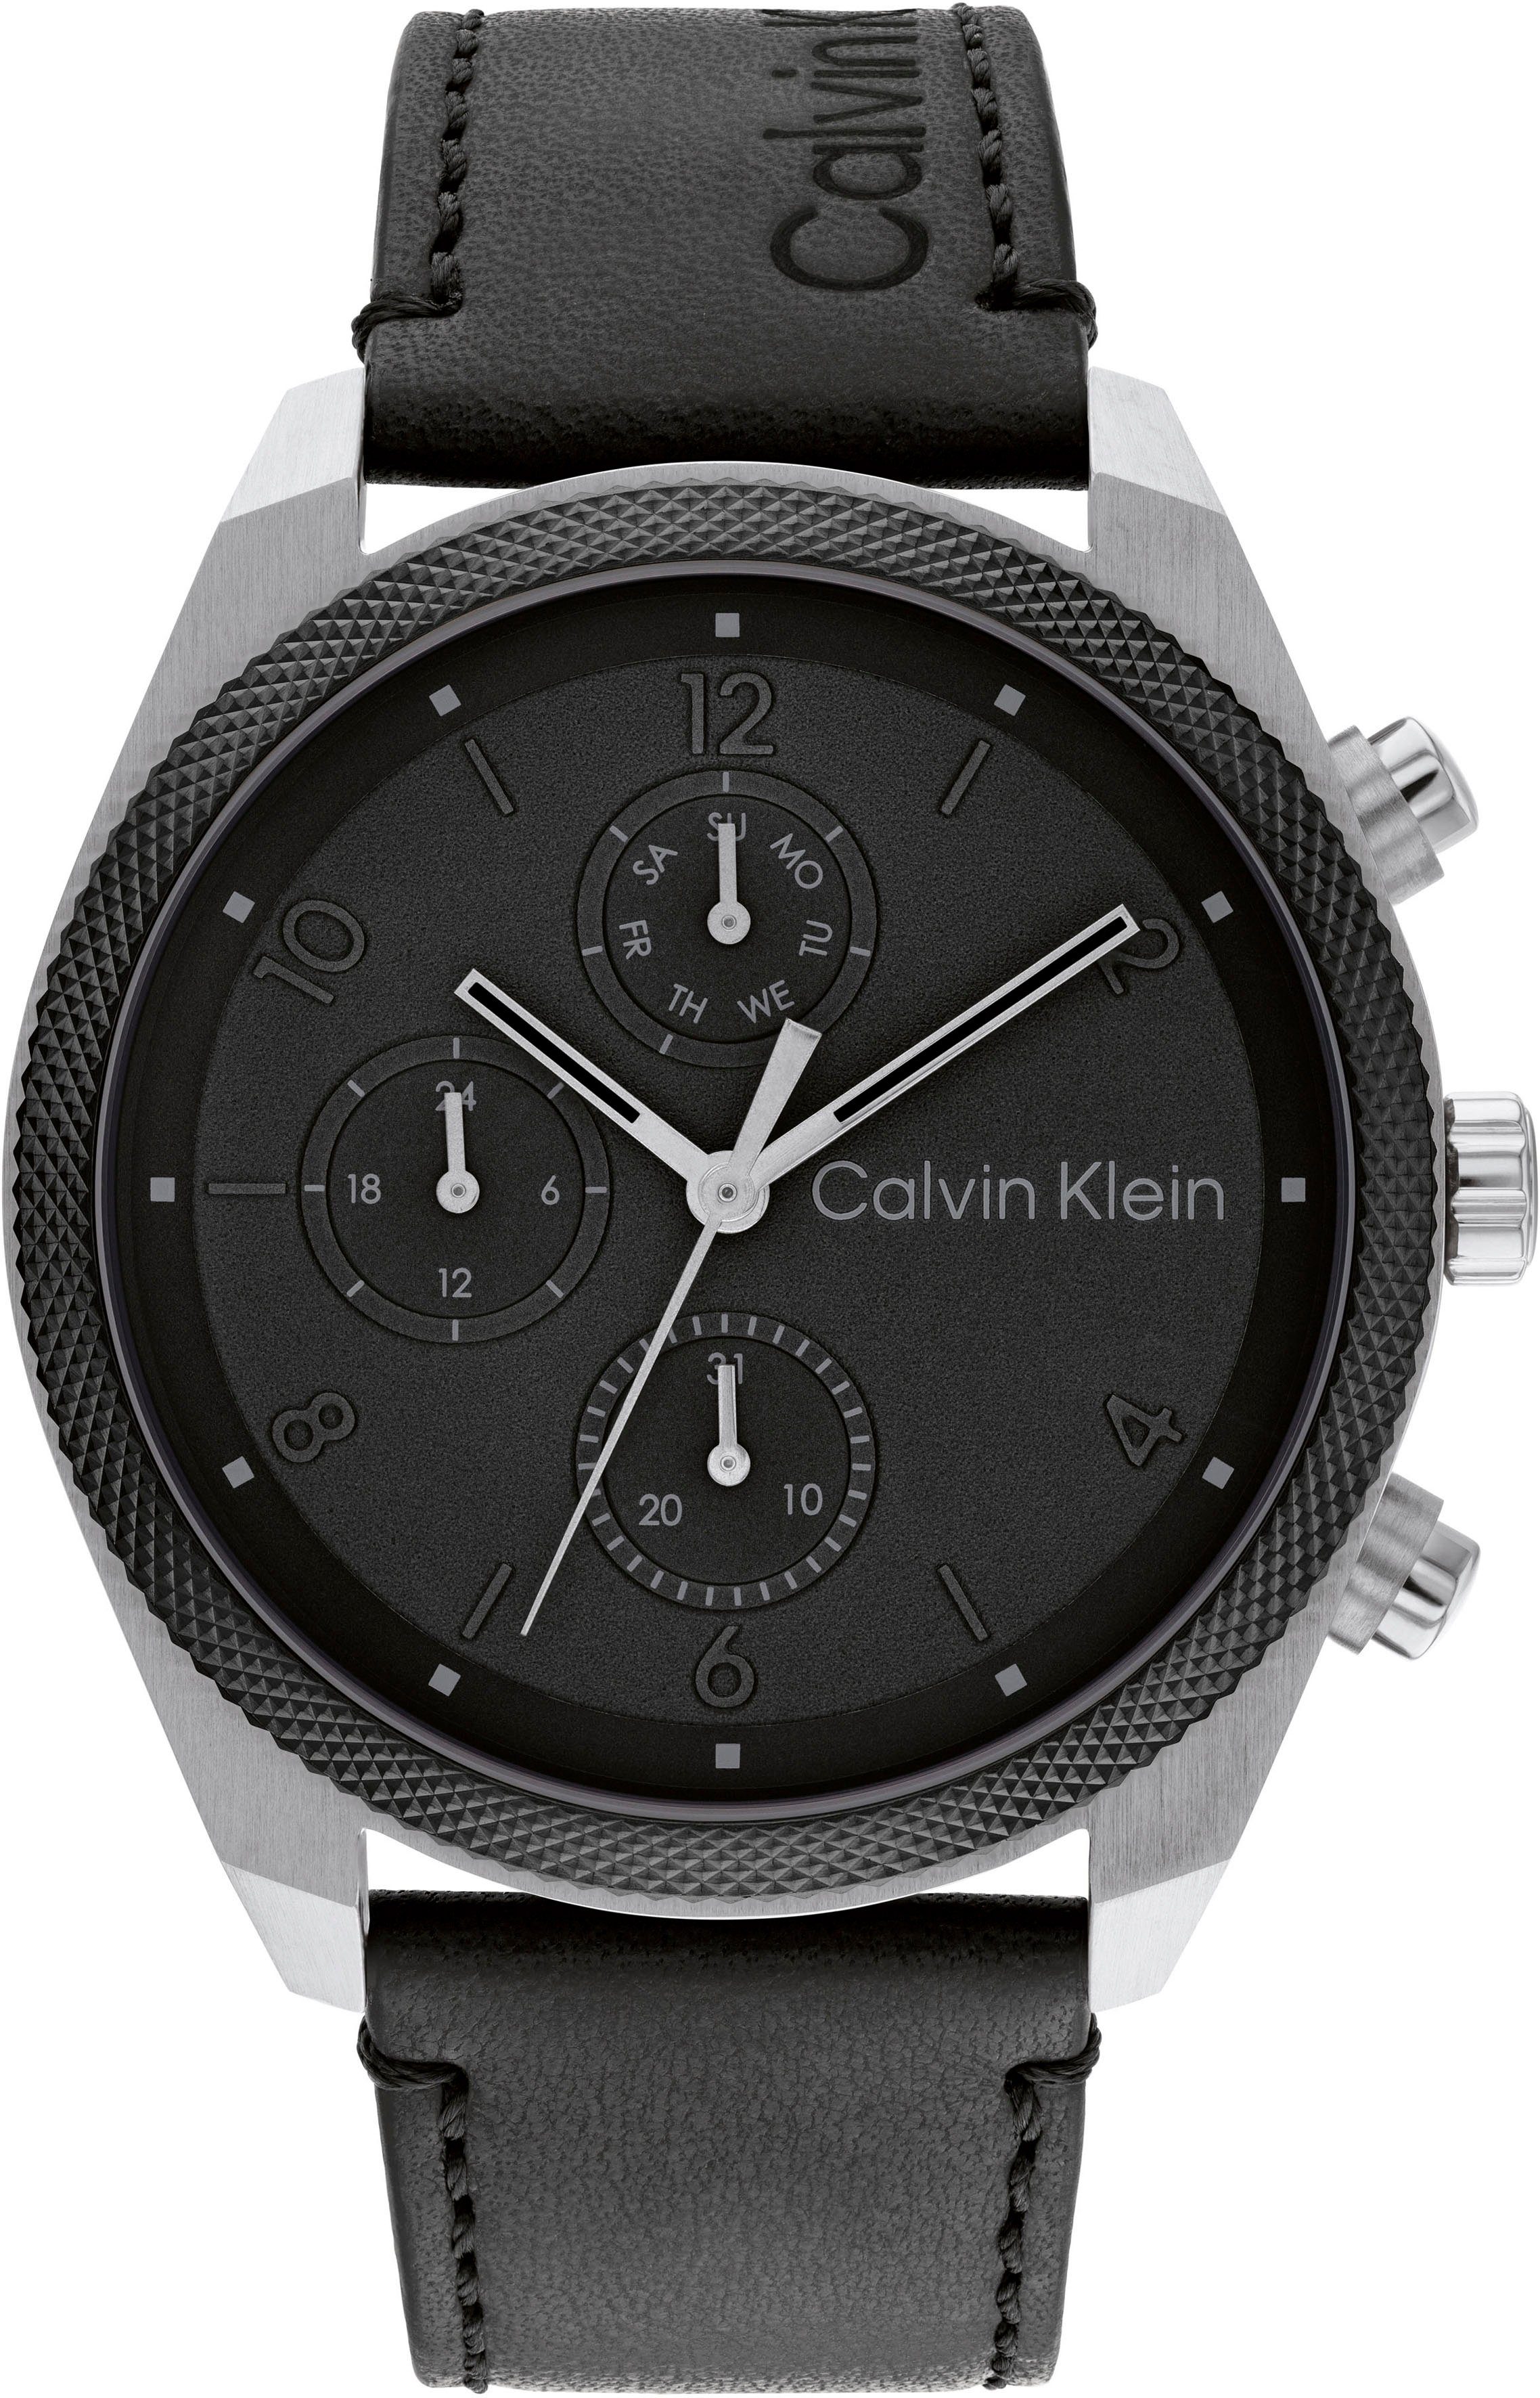 Calvin Klein Multifunktionsuhr ARCHITECTURAL, 25200364, Quarzuhr, Armbanduhr, Herrenuhr, Datum, IP-Beschichtung